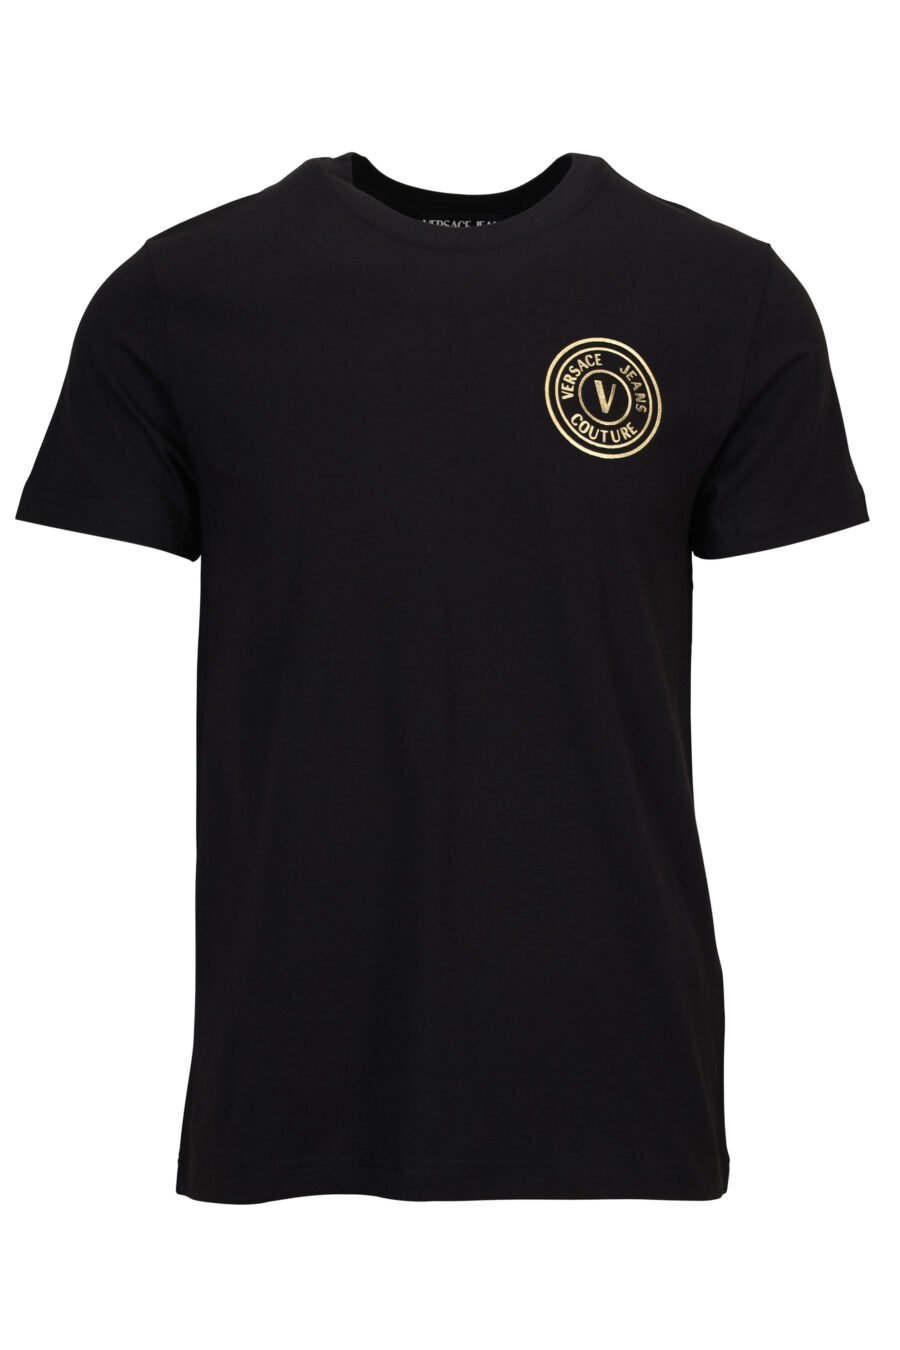 T-shirt noir avec minilogue circulaire brillant doré - 8052019597592